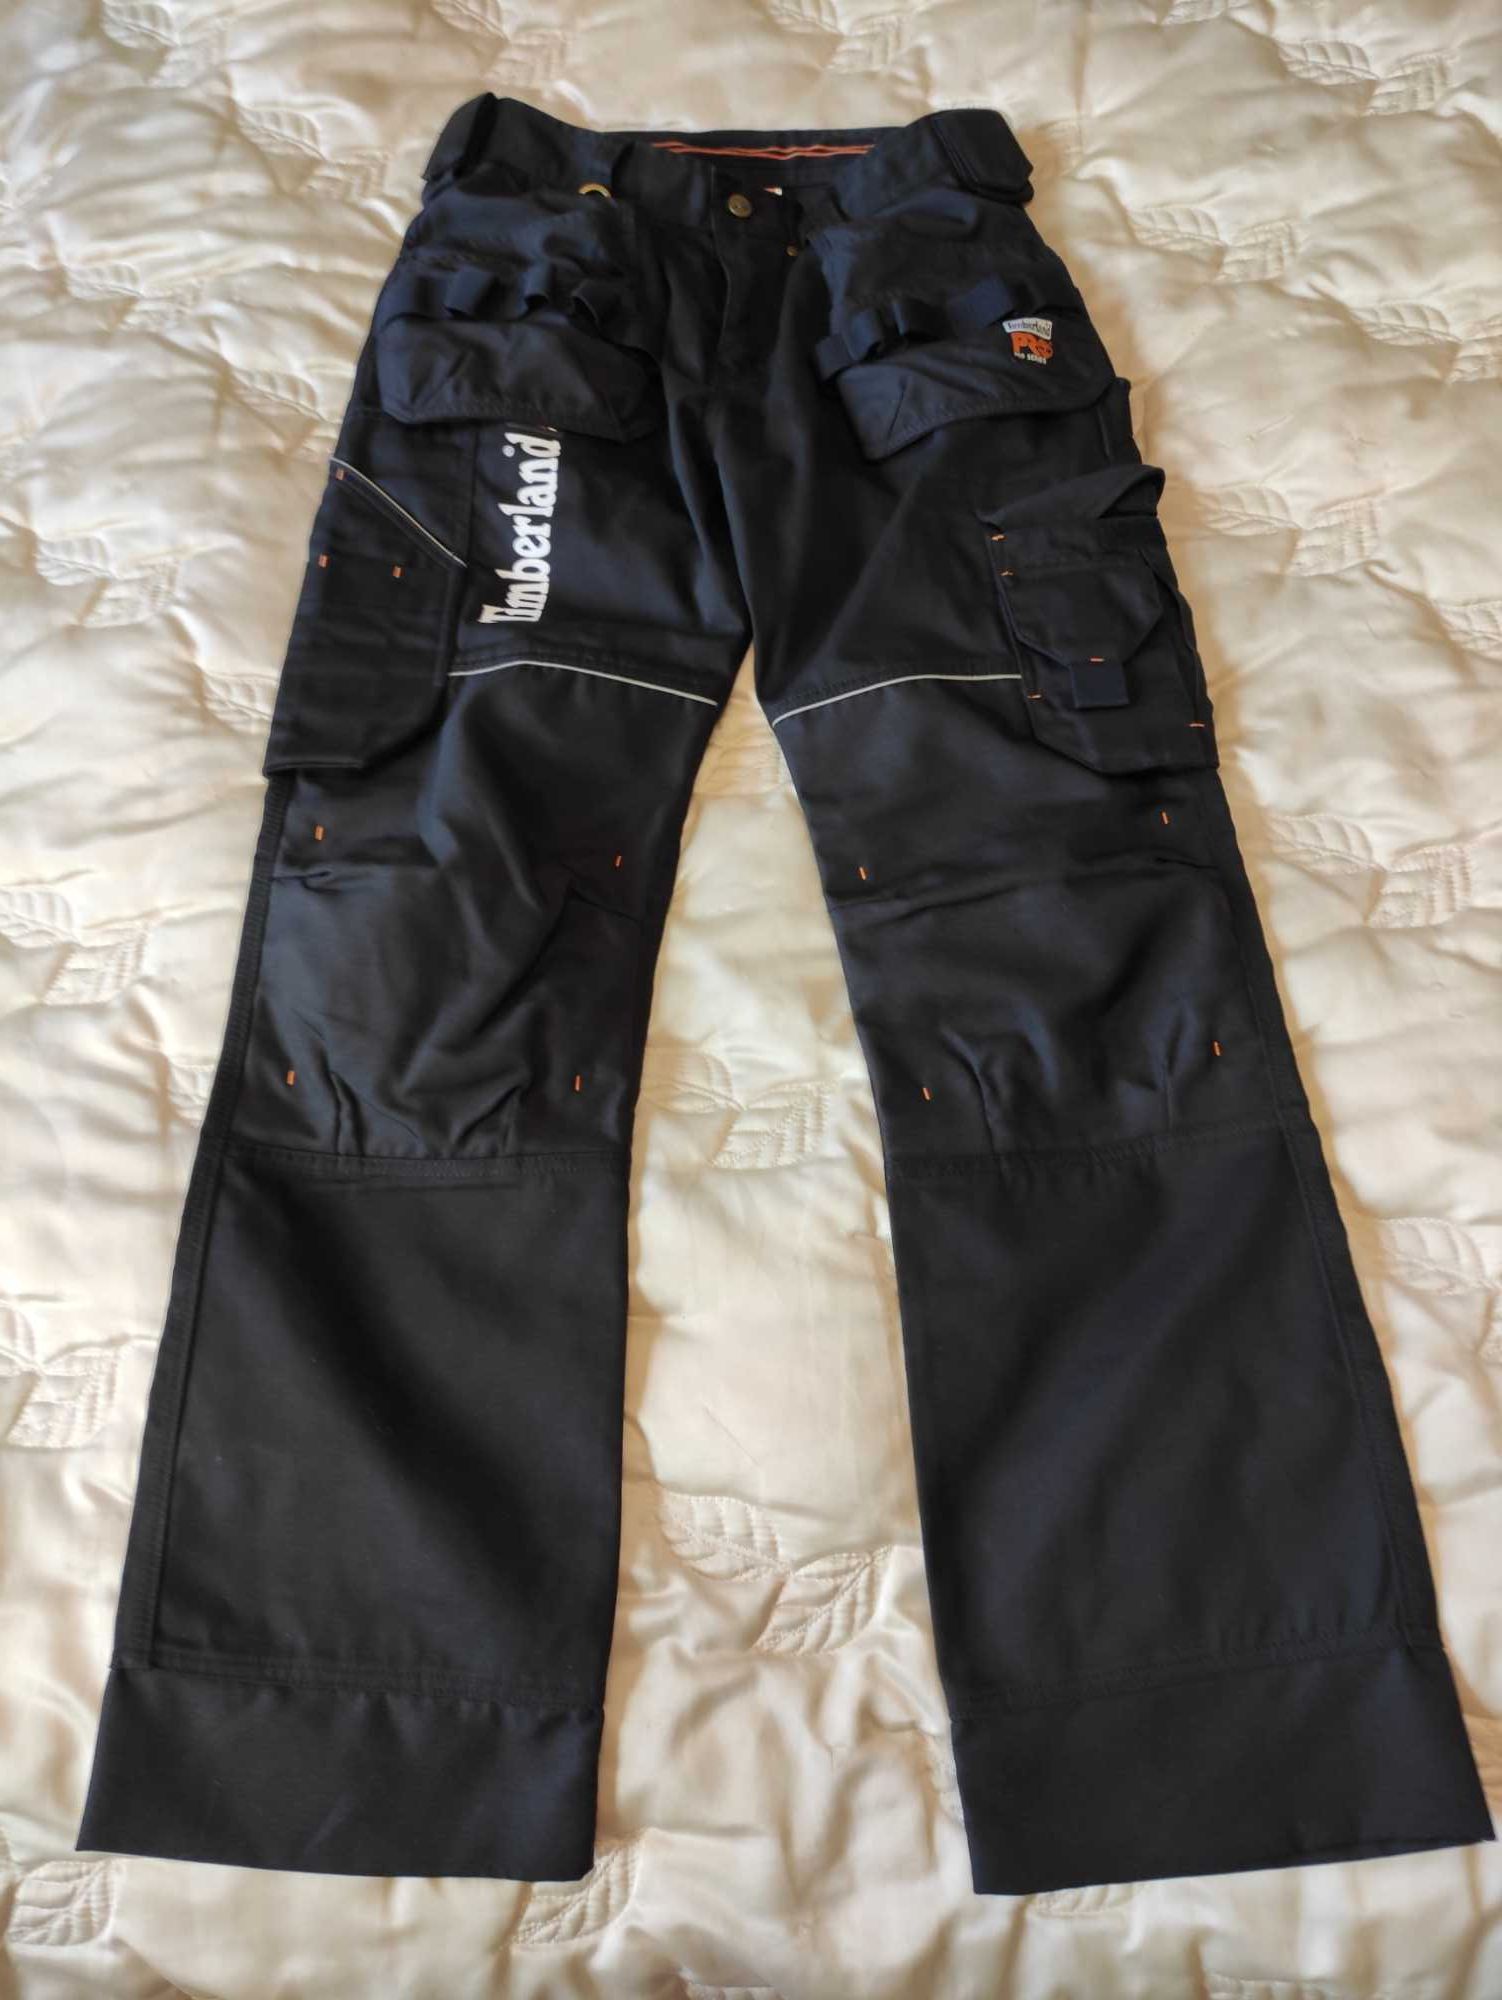 Męskie spodnie dekarskie robocze Timberland Pro Series r. 48 nowe